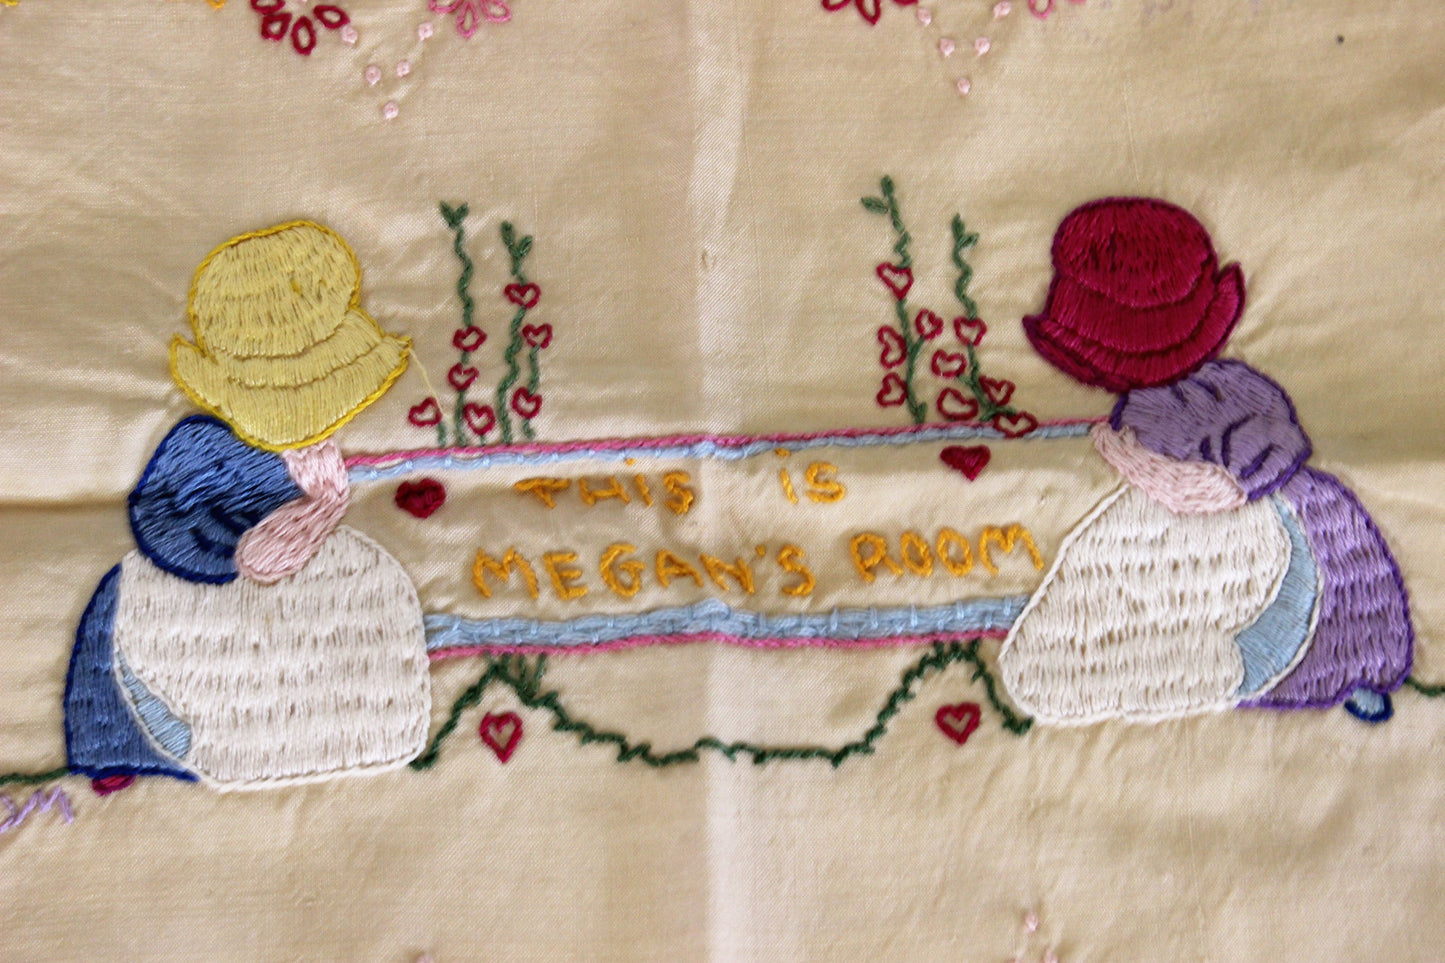 Vintage 1980s Embroidery Sampler Finished with Megans Room